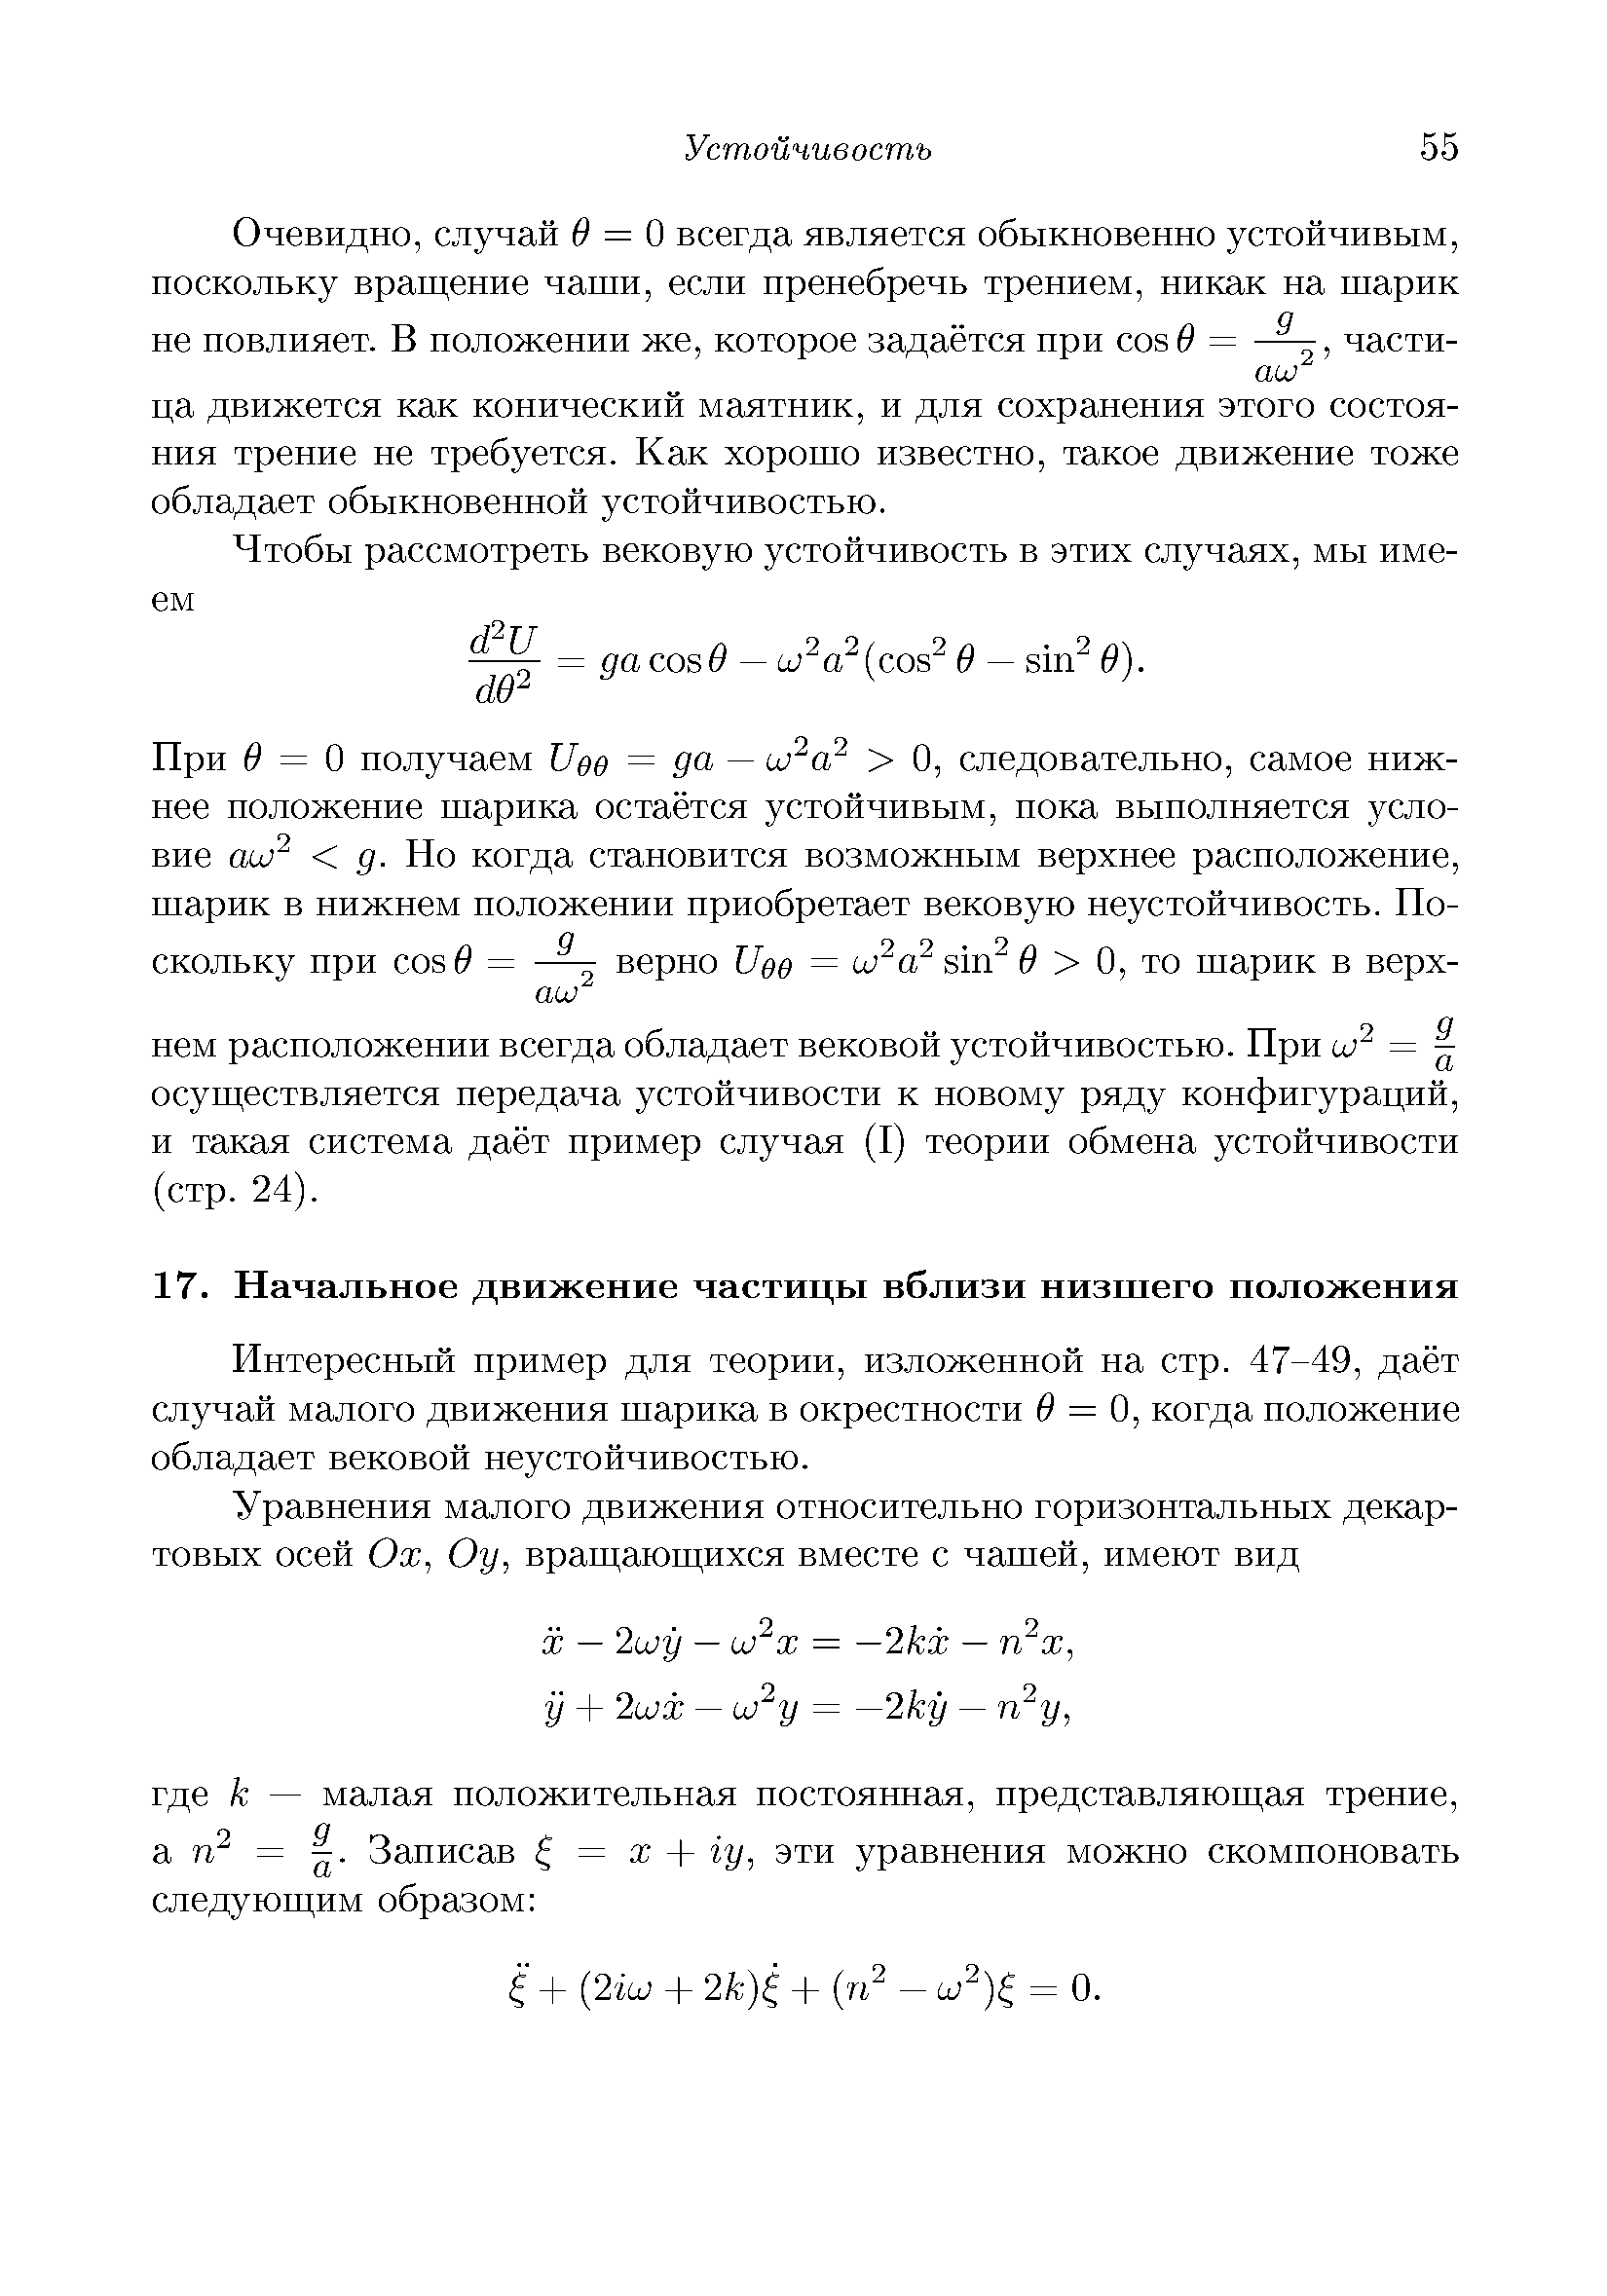 Интересный пример для теории, изложенной на стр. 47-49, даёт случай малого движения шарика в окрестности 0 = 0, когда положение обладает вековой неустойчивостью.
